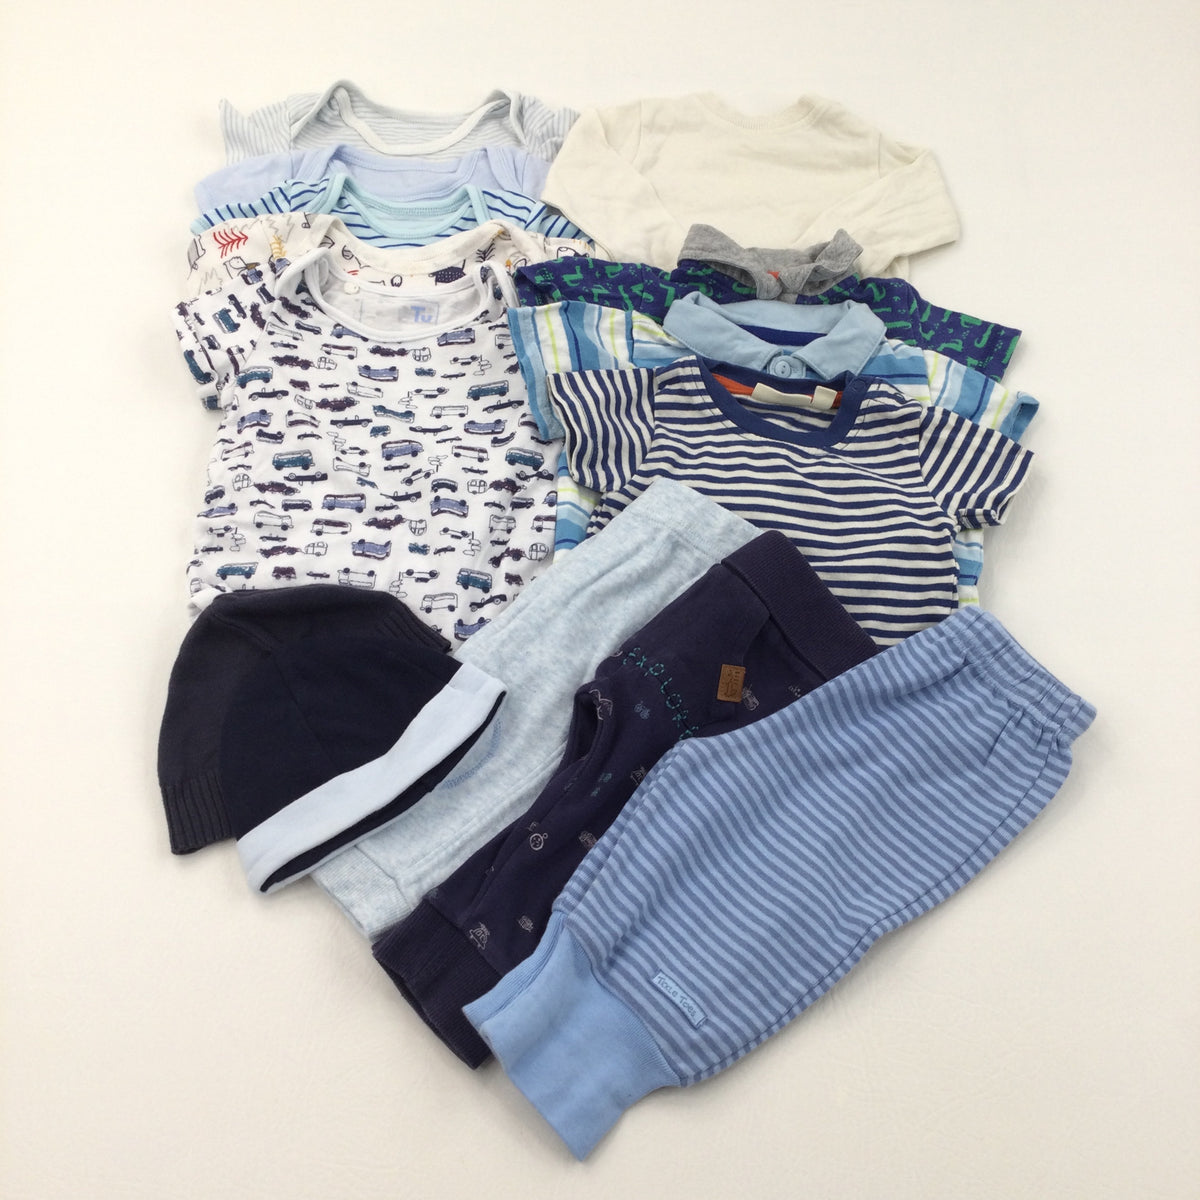 Baby Clothes Bundle (14 Items) - Boys 3-6 Months – Katie's Kids Clothes